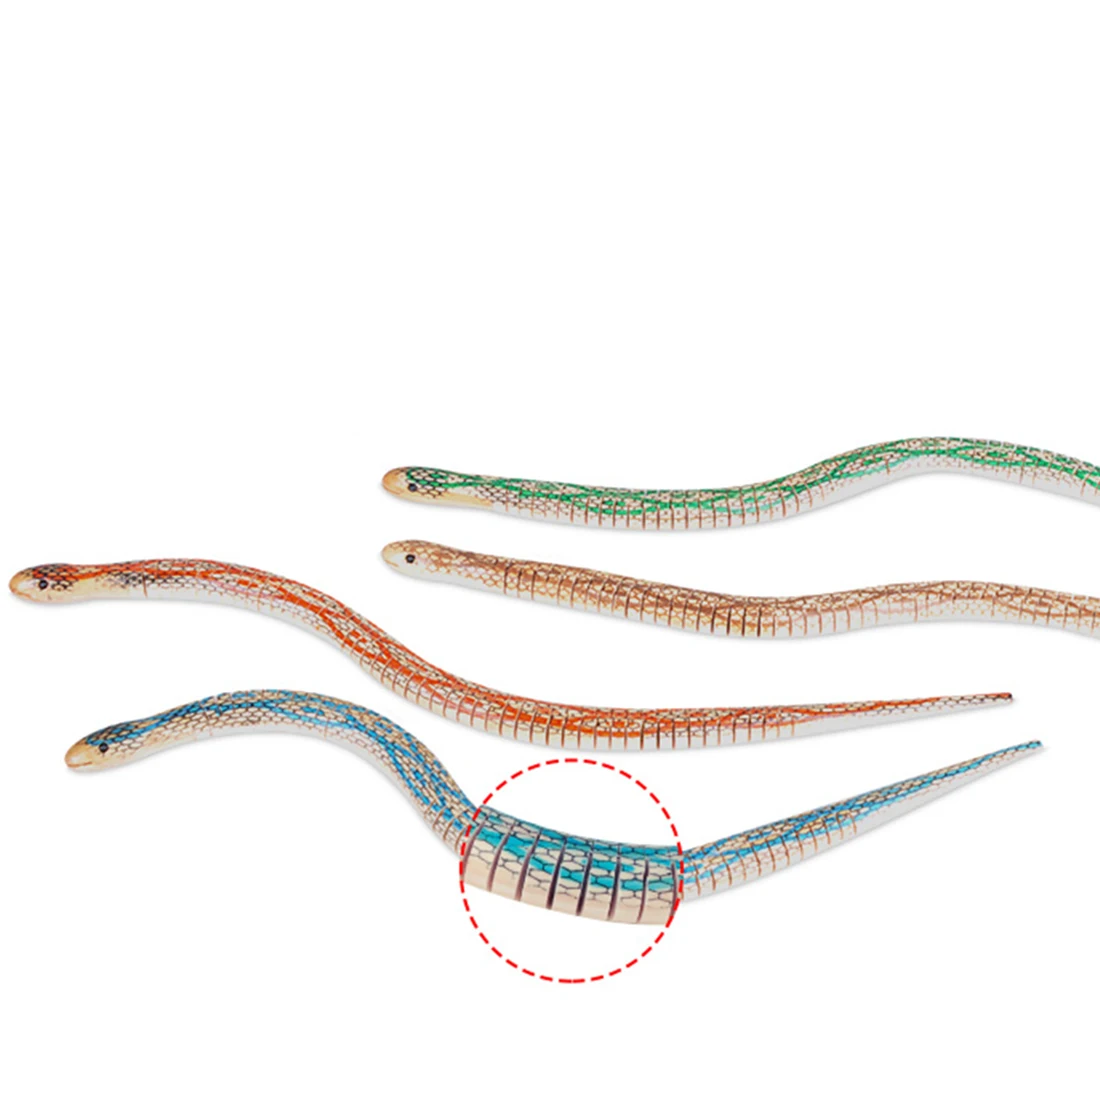 Новинка трюк игрушки для детей моделирование Деревянные маленькие змеи гибкость поддельные гибкая змея игрушка украшение-случайный цвет